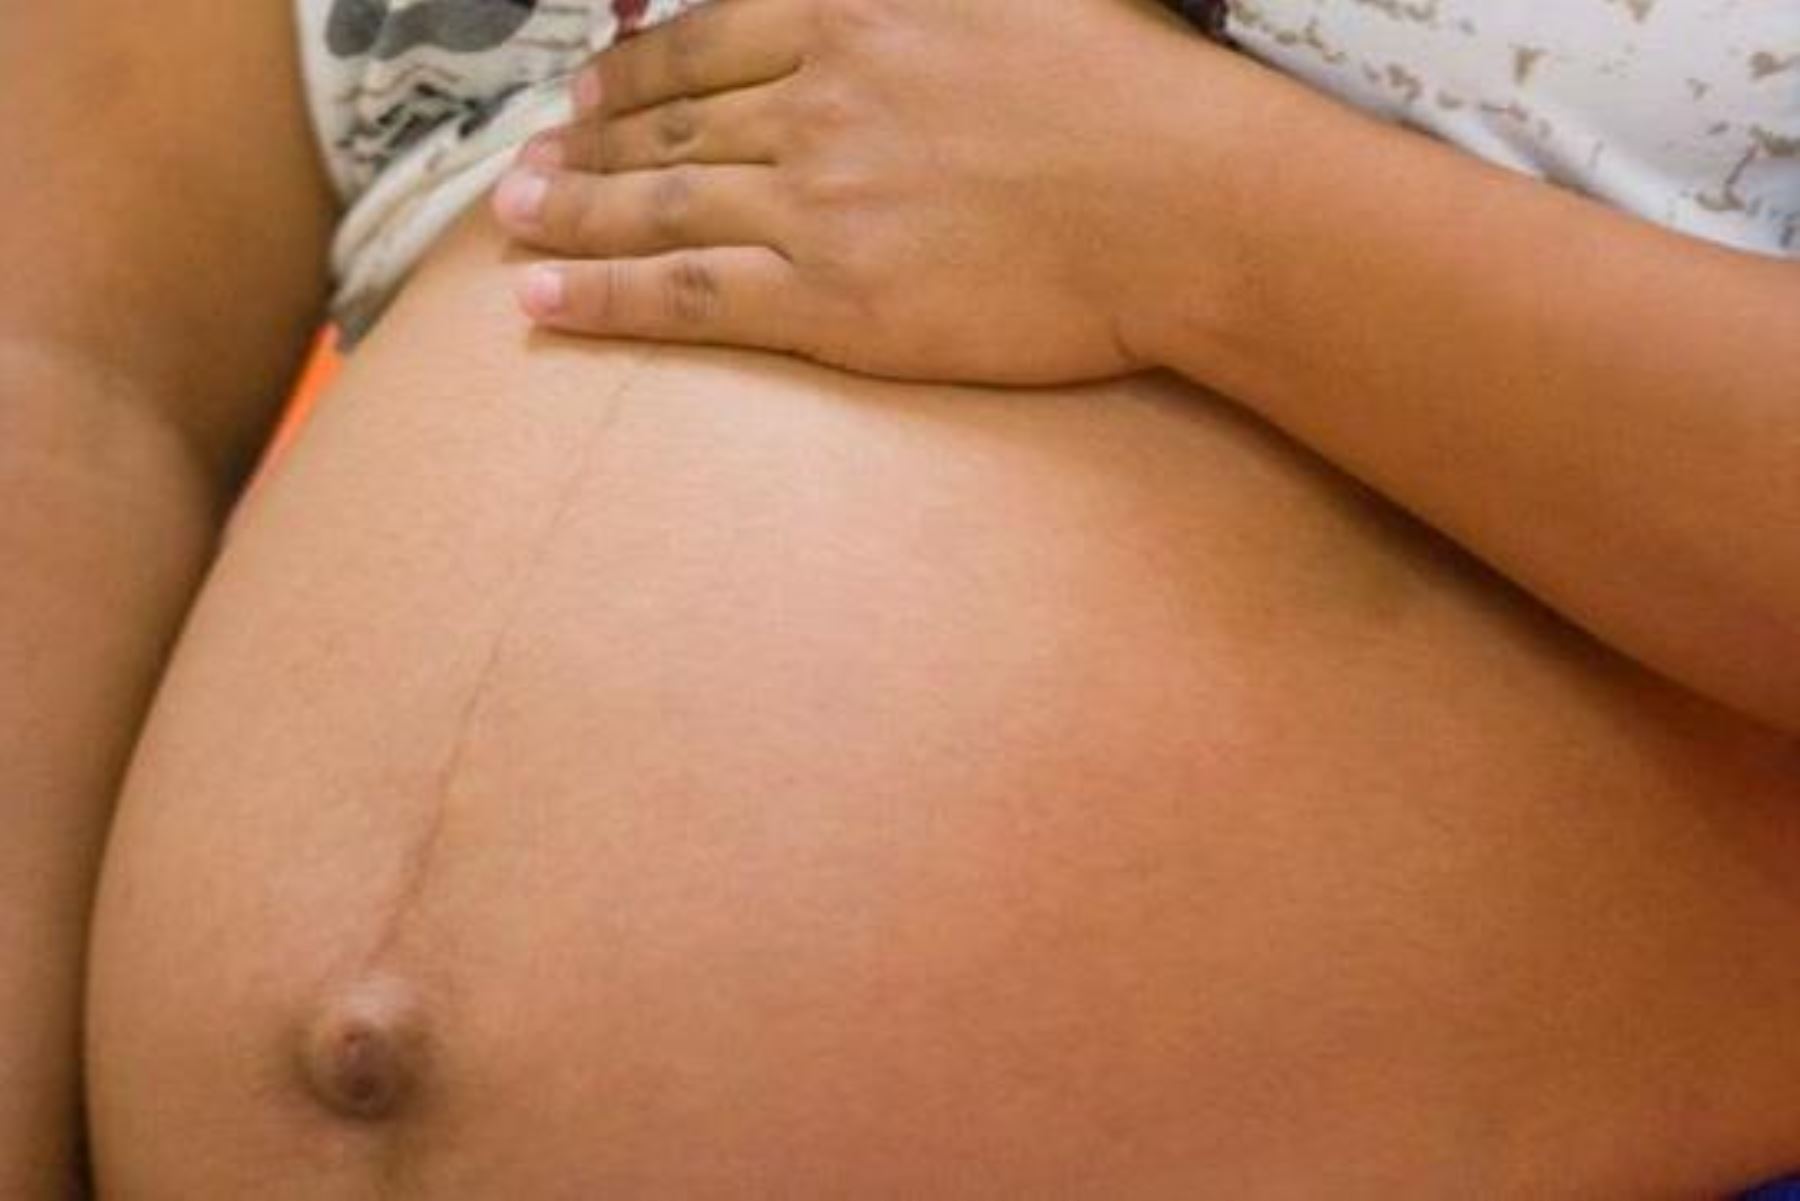 Embarazo adolescente limita posibilidades de desarrollo e impacta en salud física y mental. Foto: ANDINA/Difusión.